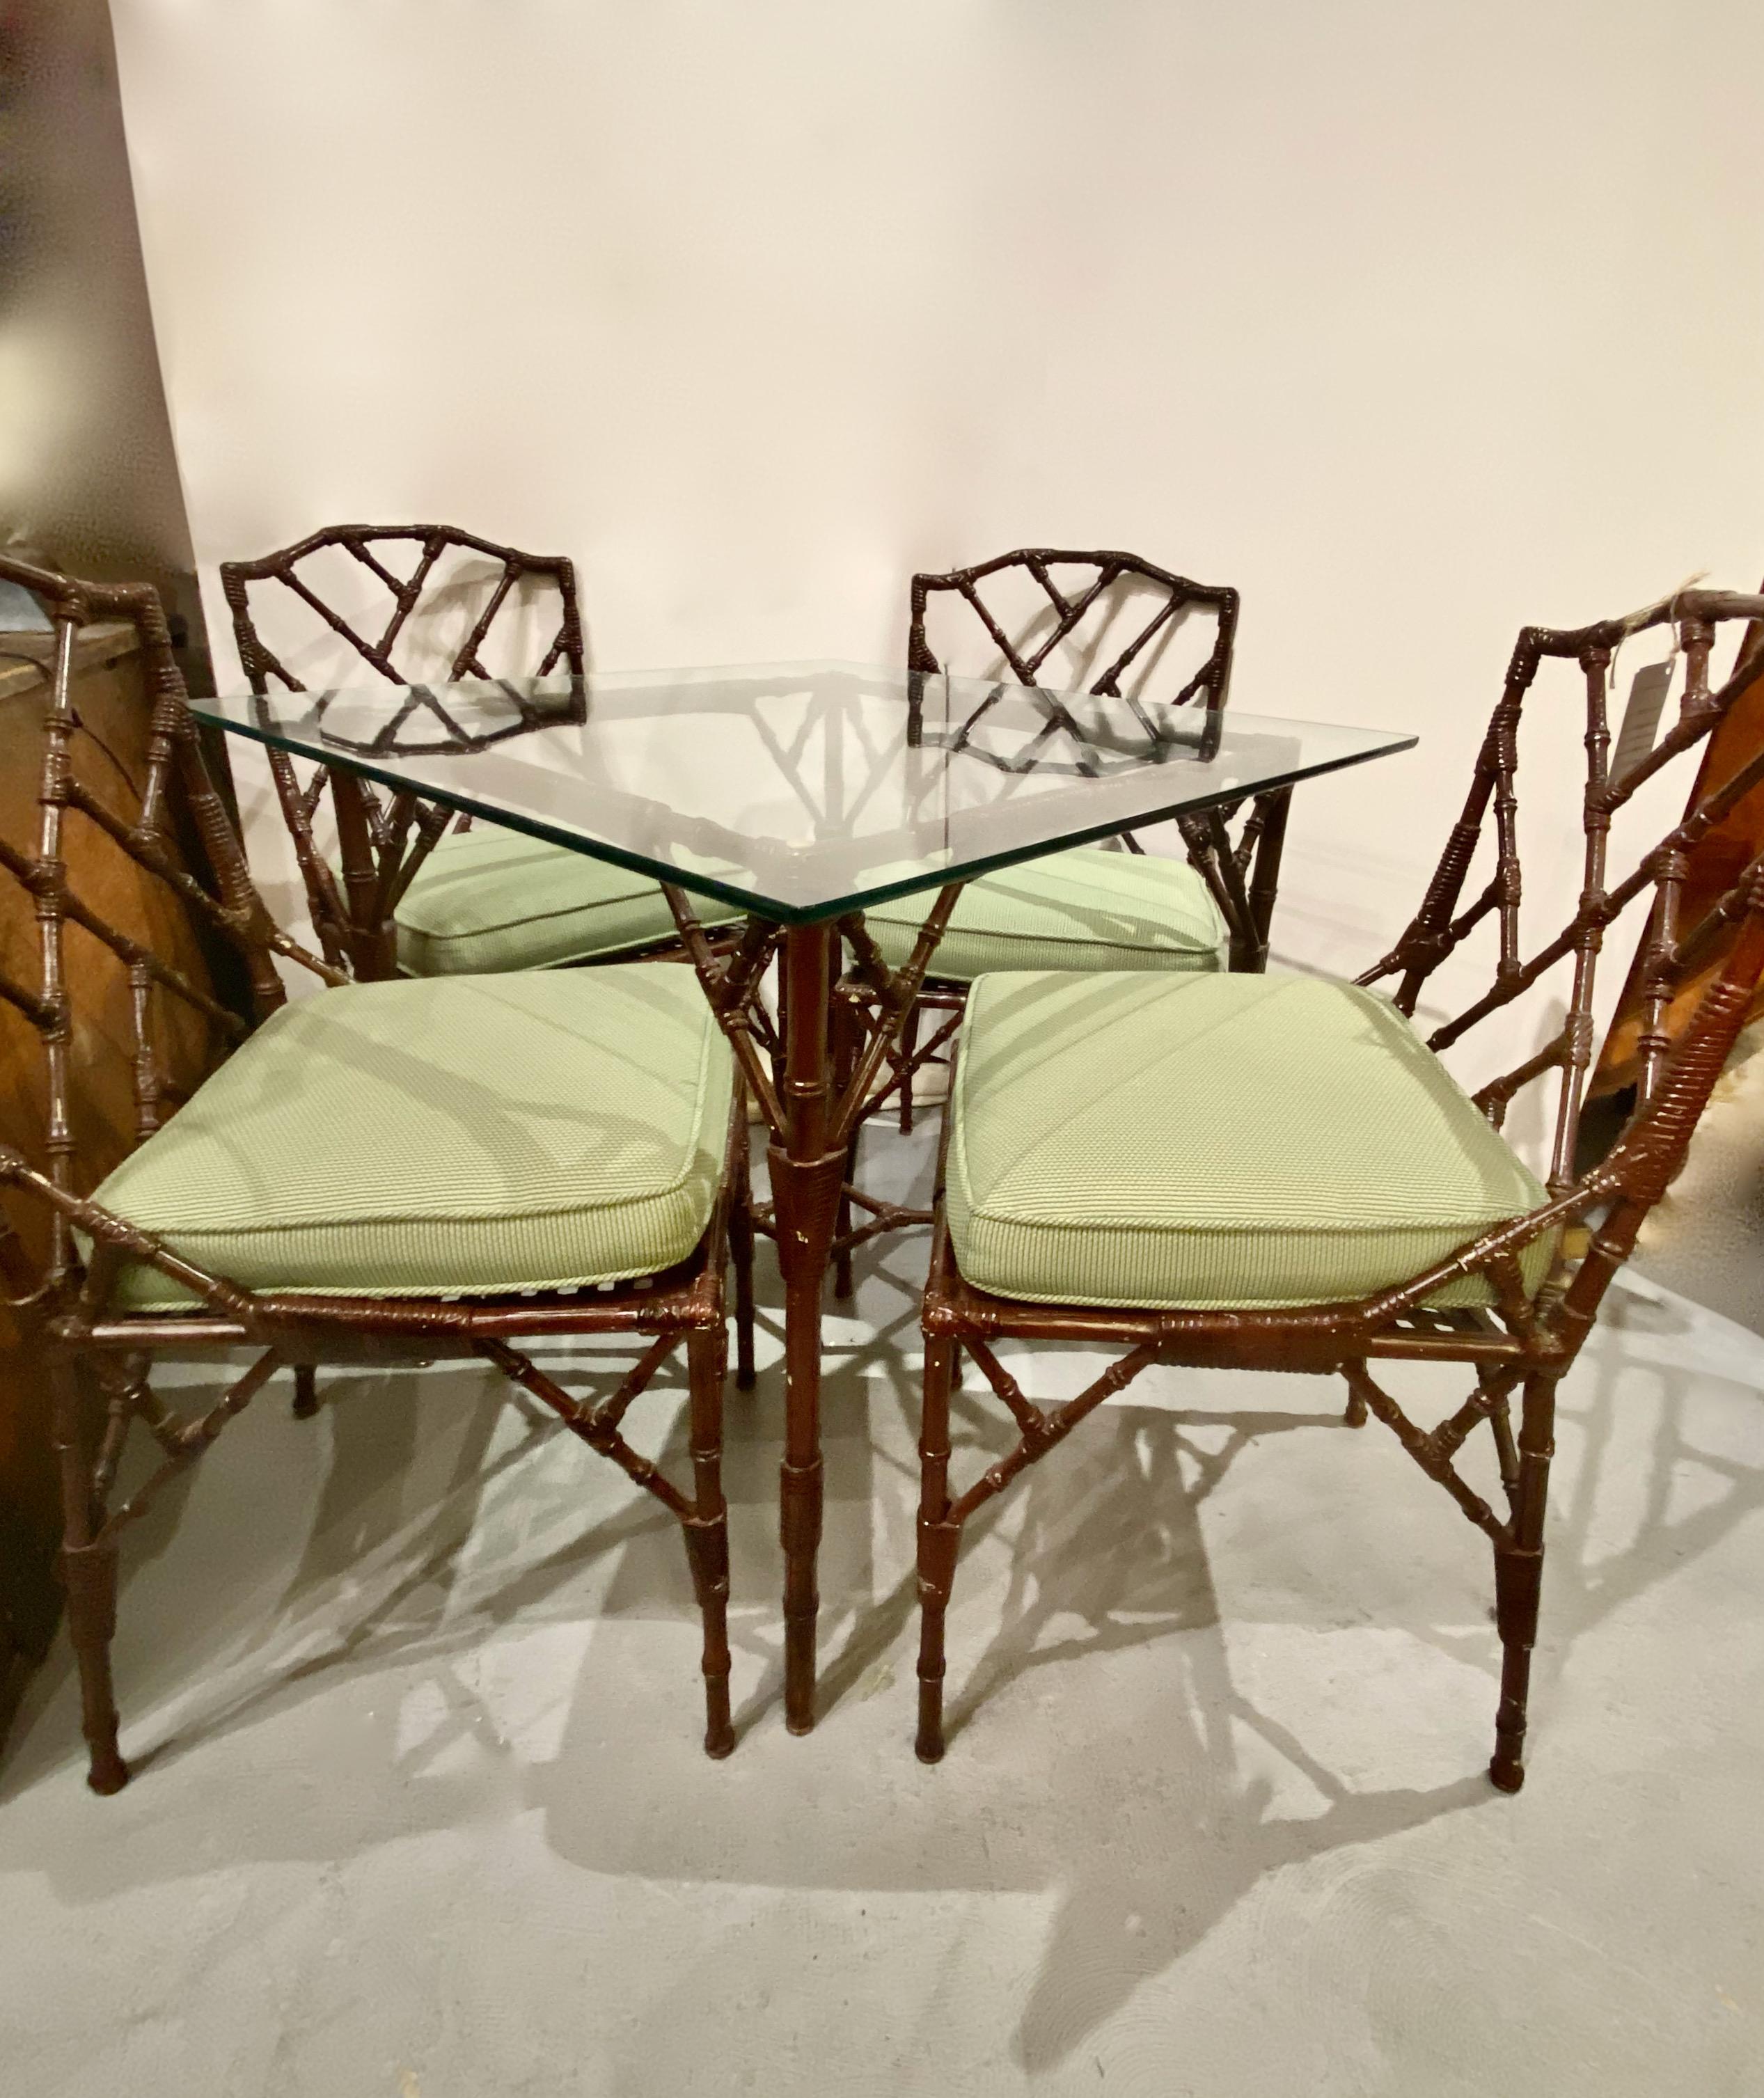 Dies ist ein ungewöhnlicher Satz von 4 chinesischen Chippendale Stühlen aus Aluminiumguss im chinesischen Chippendale-Stil zusammen mit einem passenden Tisch aus Aluminiumguss mit einer Glasplatte aus Bambus. Die Detailgenauigkeit des Gusses der